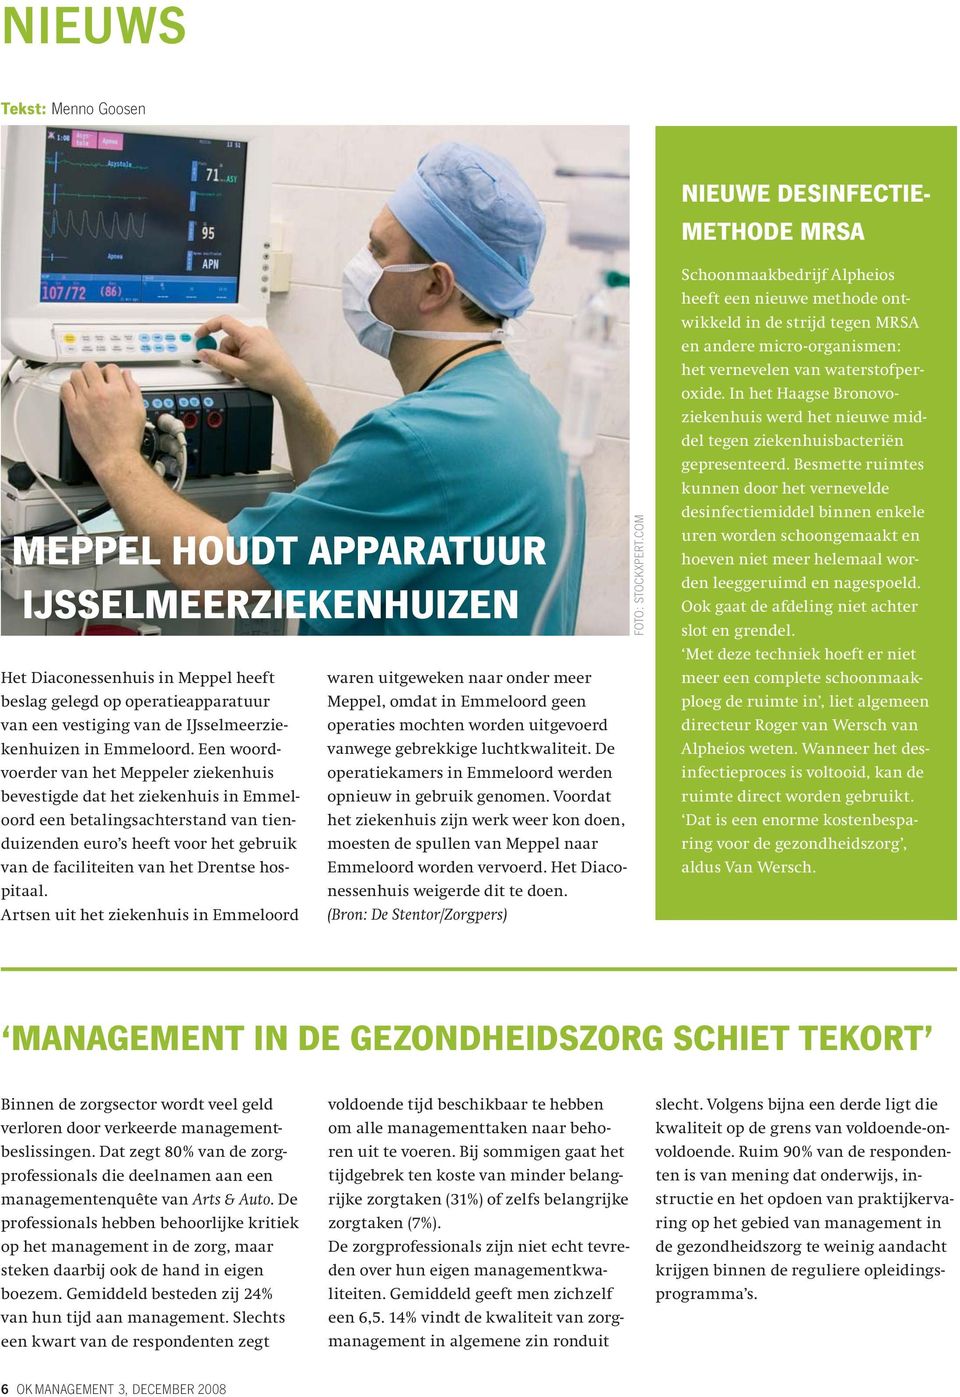 Een woordvoerder van het Meppeler ziekenhuis bevestigde dat het ziekenhuis in Emmeloord een betalingsachterstand van tienduizenden euro s heeft voor het gebruik van de faciliteiten van het Drentse